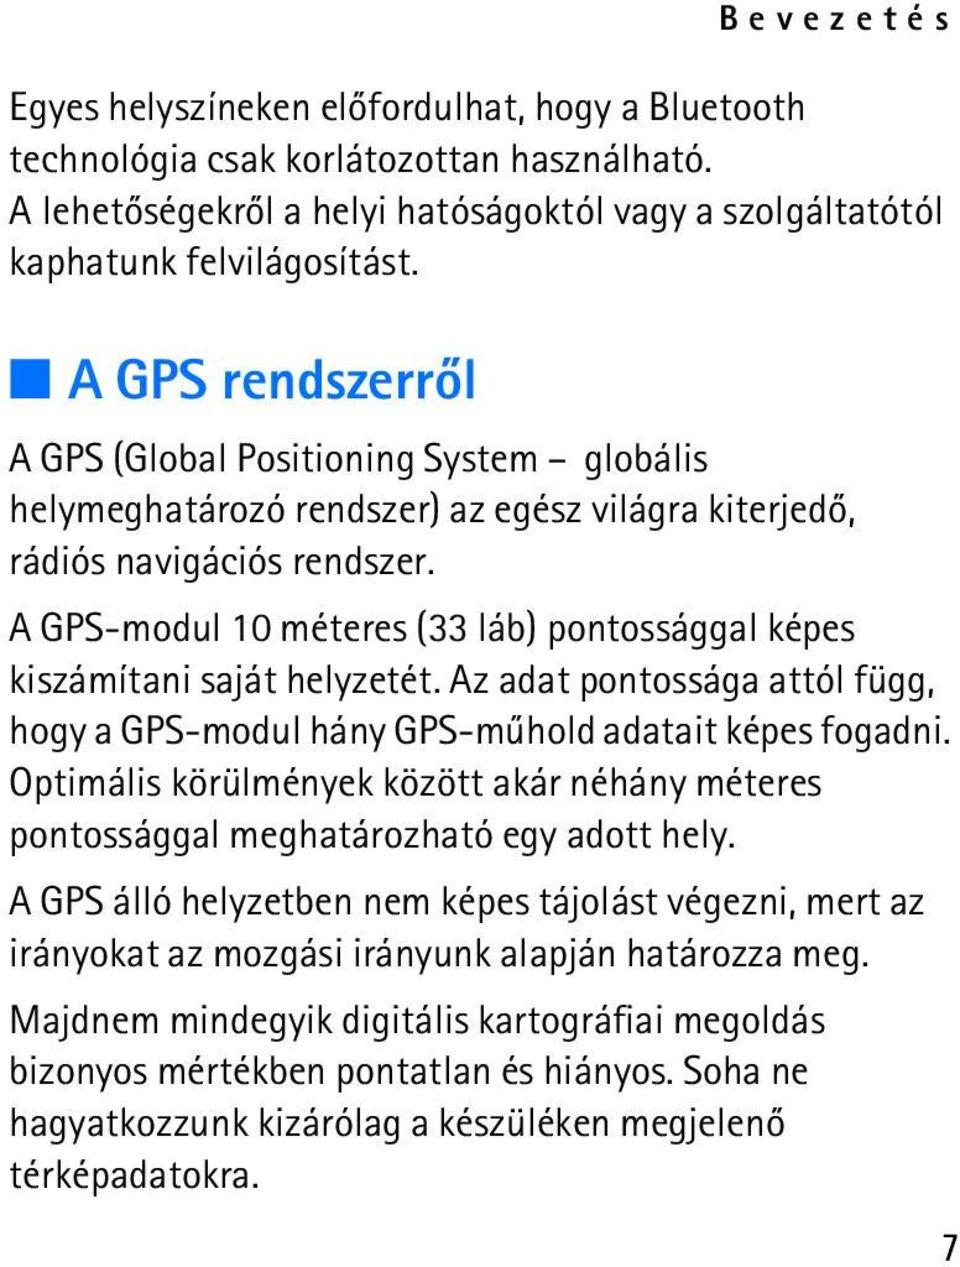 A GPS-modul 10 méteres (33 láb) pontossággal képes kiszámítani saját helyzetét. Az adat pontossága attól függ, hogy a GPS-modul hány GPS-mûhold adatait képes fogadni.